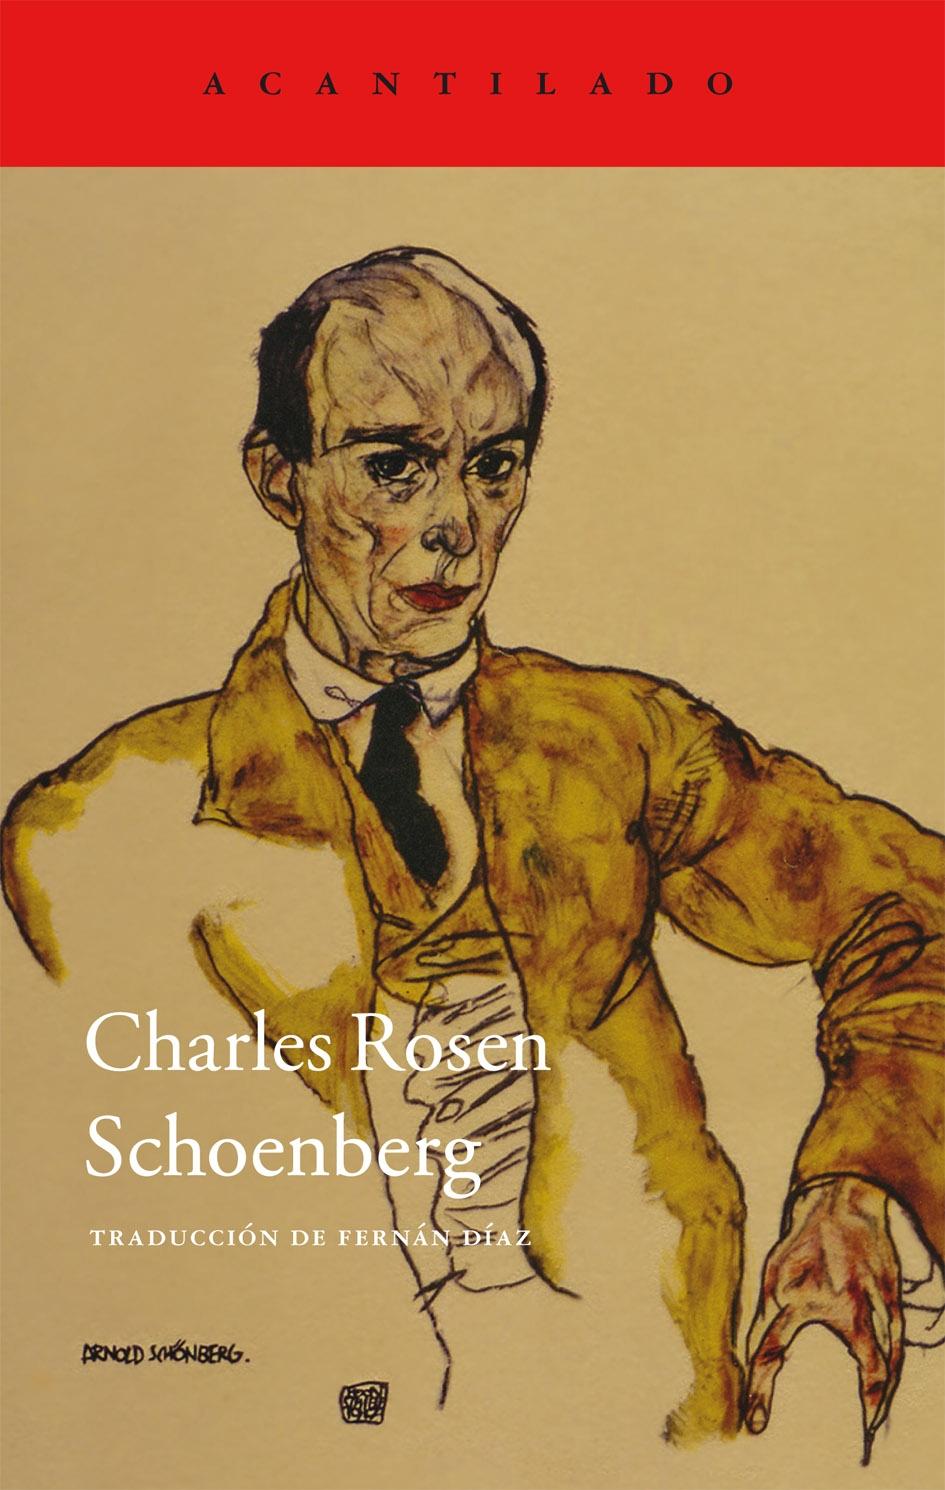 CHARLES ROSEN SCHOENBERG